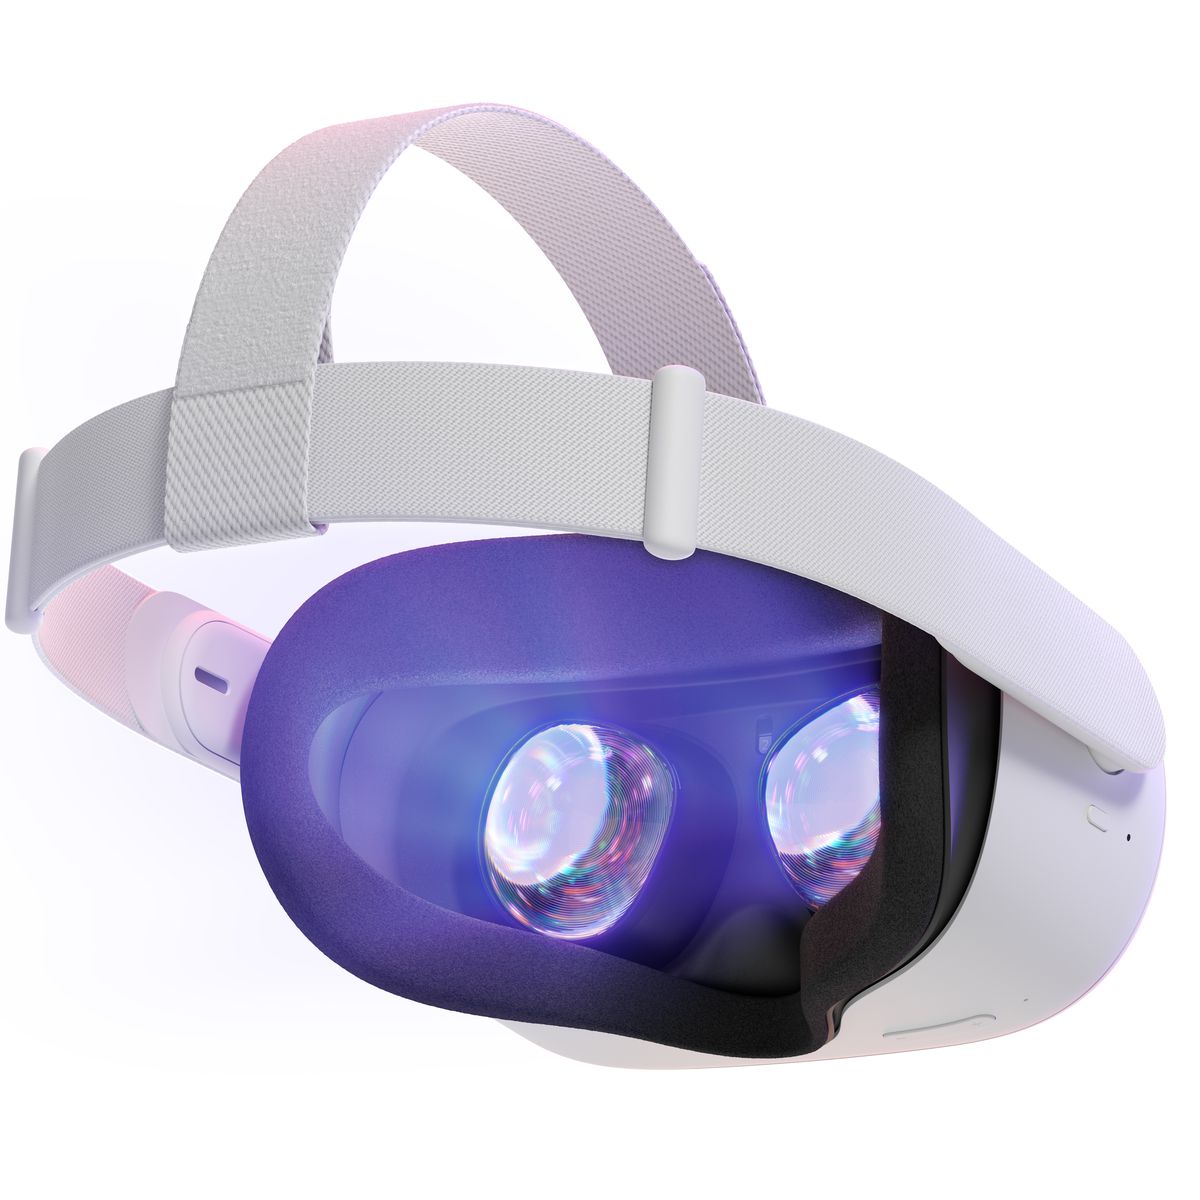 Oculus Rift 2 kulaklığının arkası, yeni kumaş kayışı gösteriyor